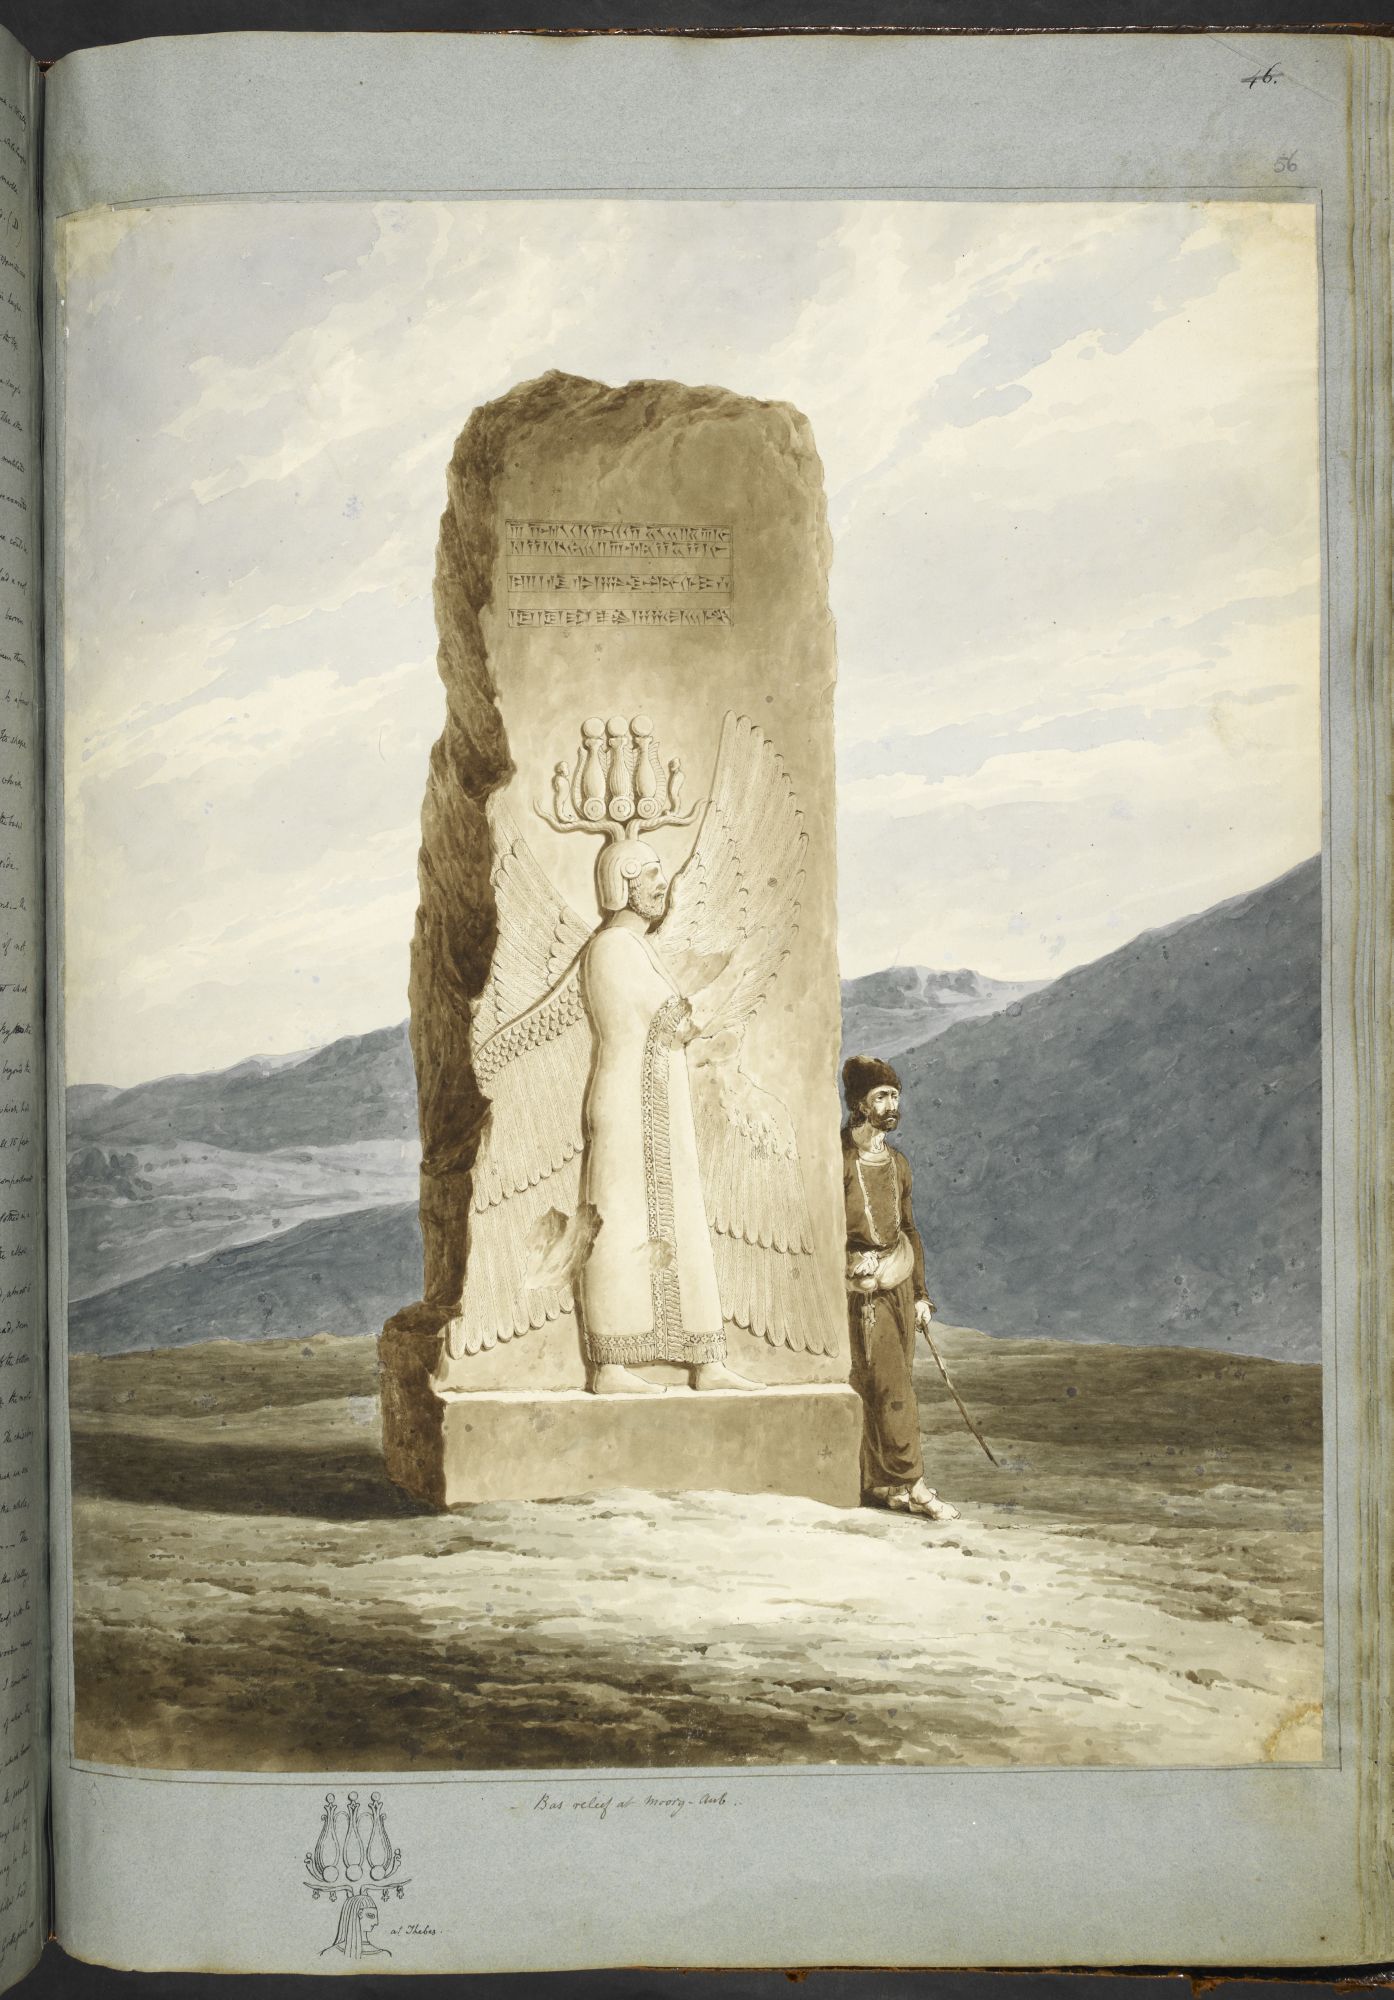 Bas-relief de Cyrus le Grand sur un pilier à Pasargades. Le bas-relief représente Cyrus, le fondateur de l'empire achéménide, avec des ailes et une couronne Hemhem.